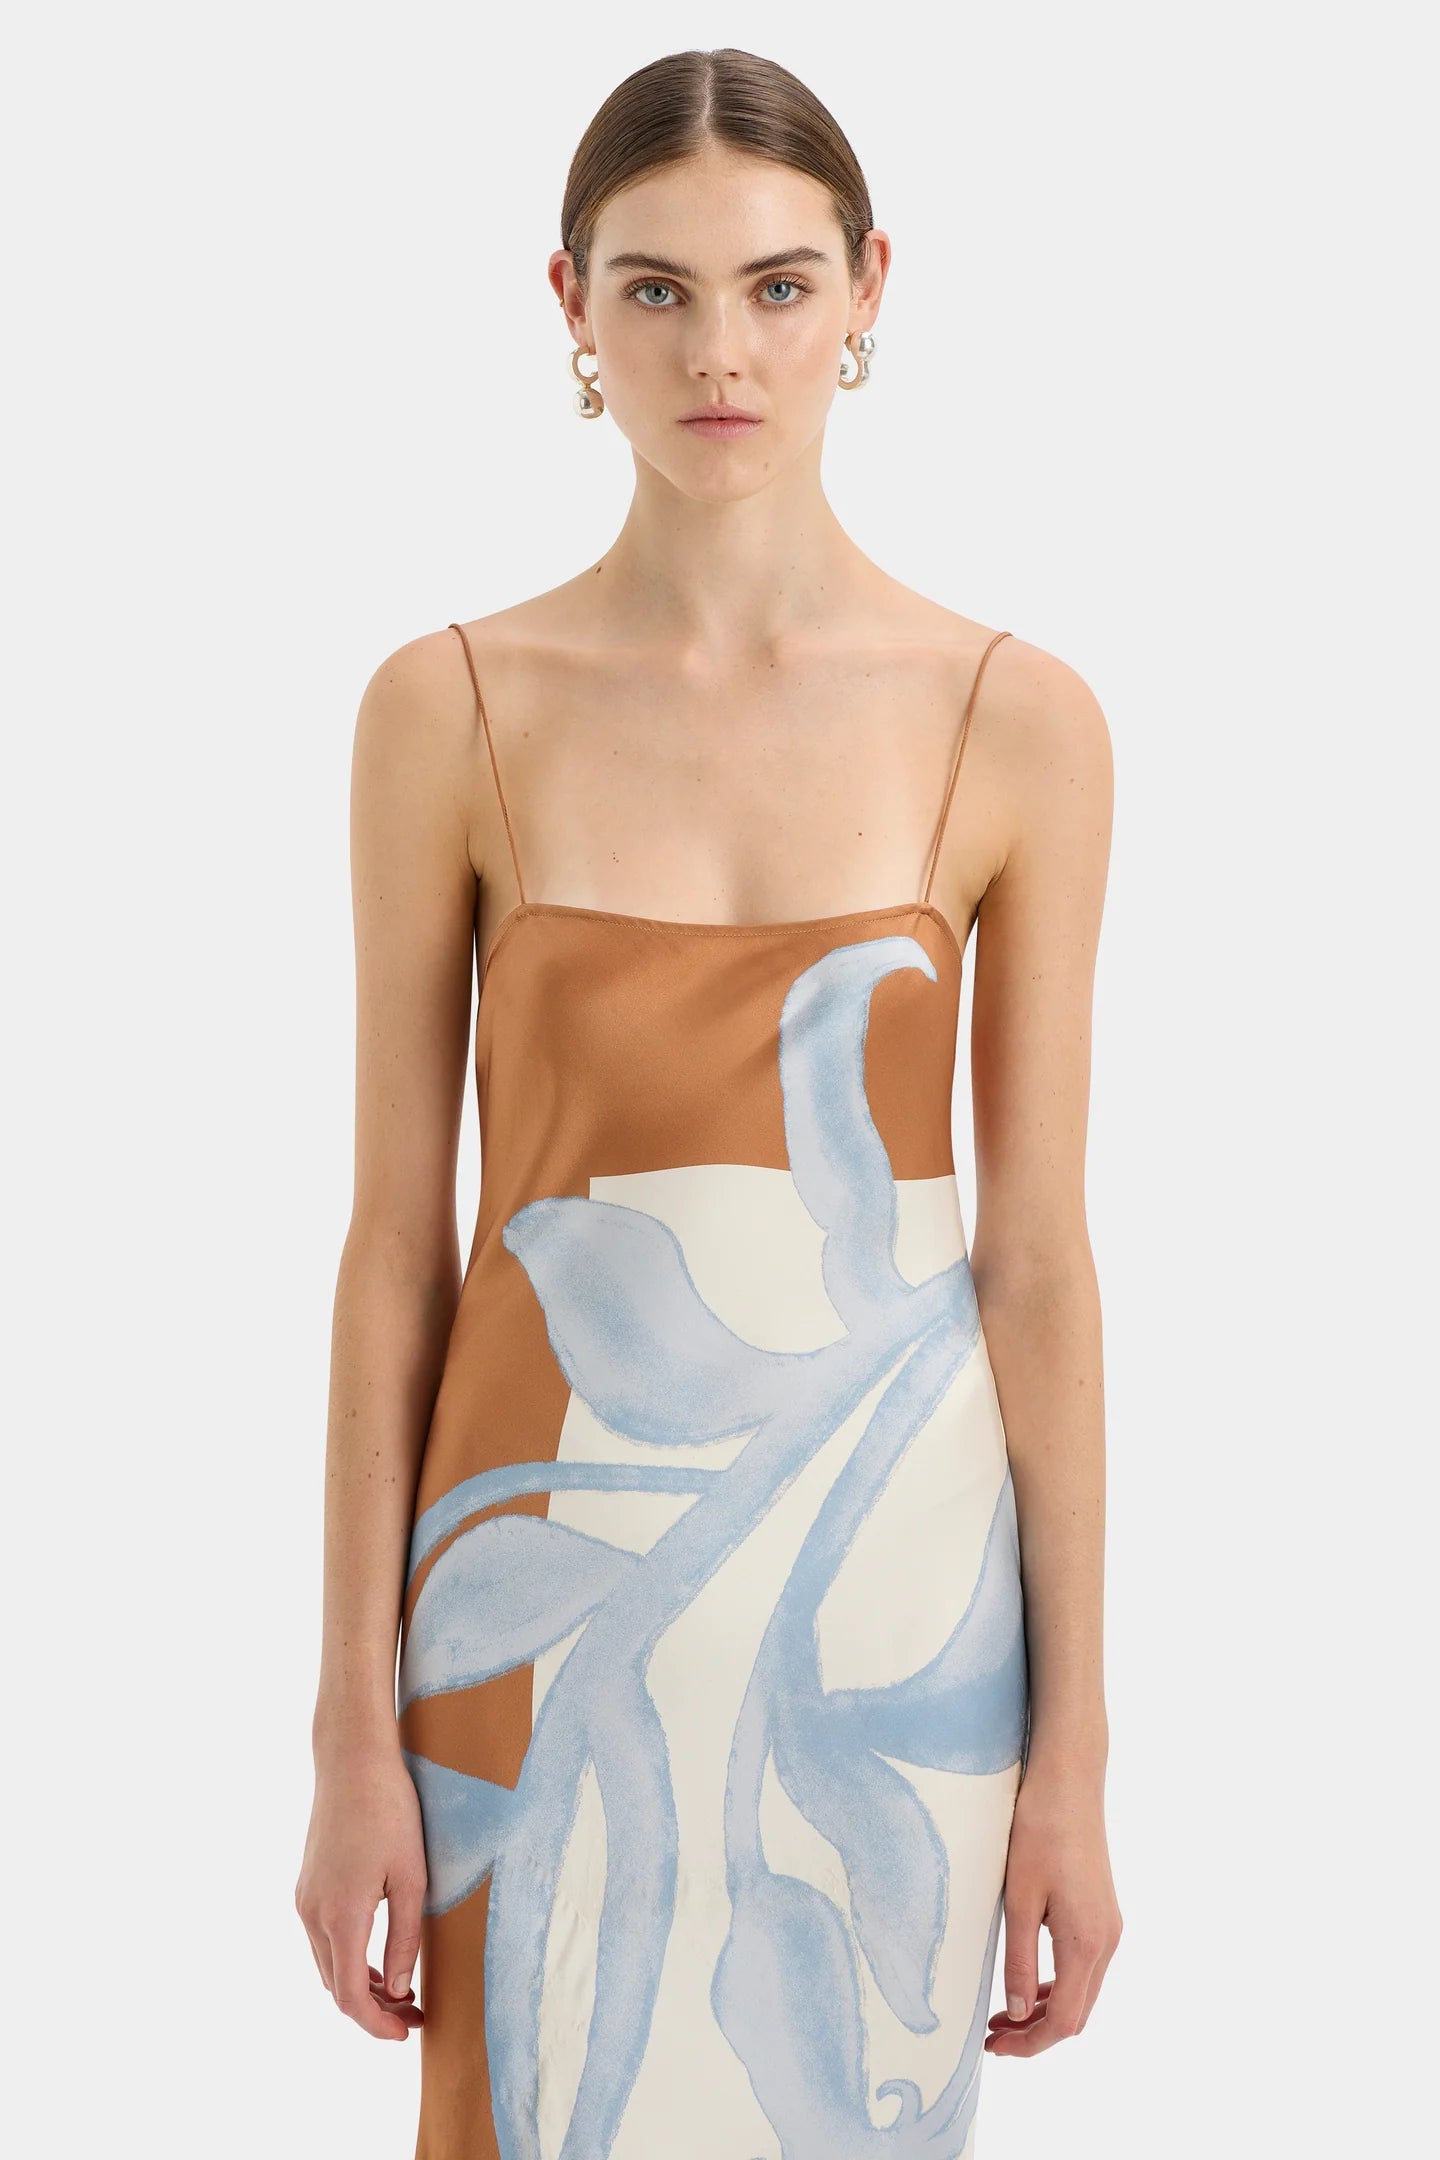 Sorrento Slip Dress - Sciarpa Print